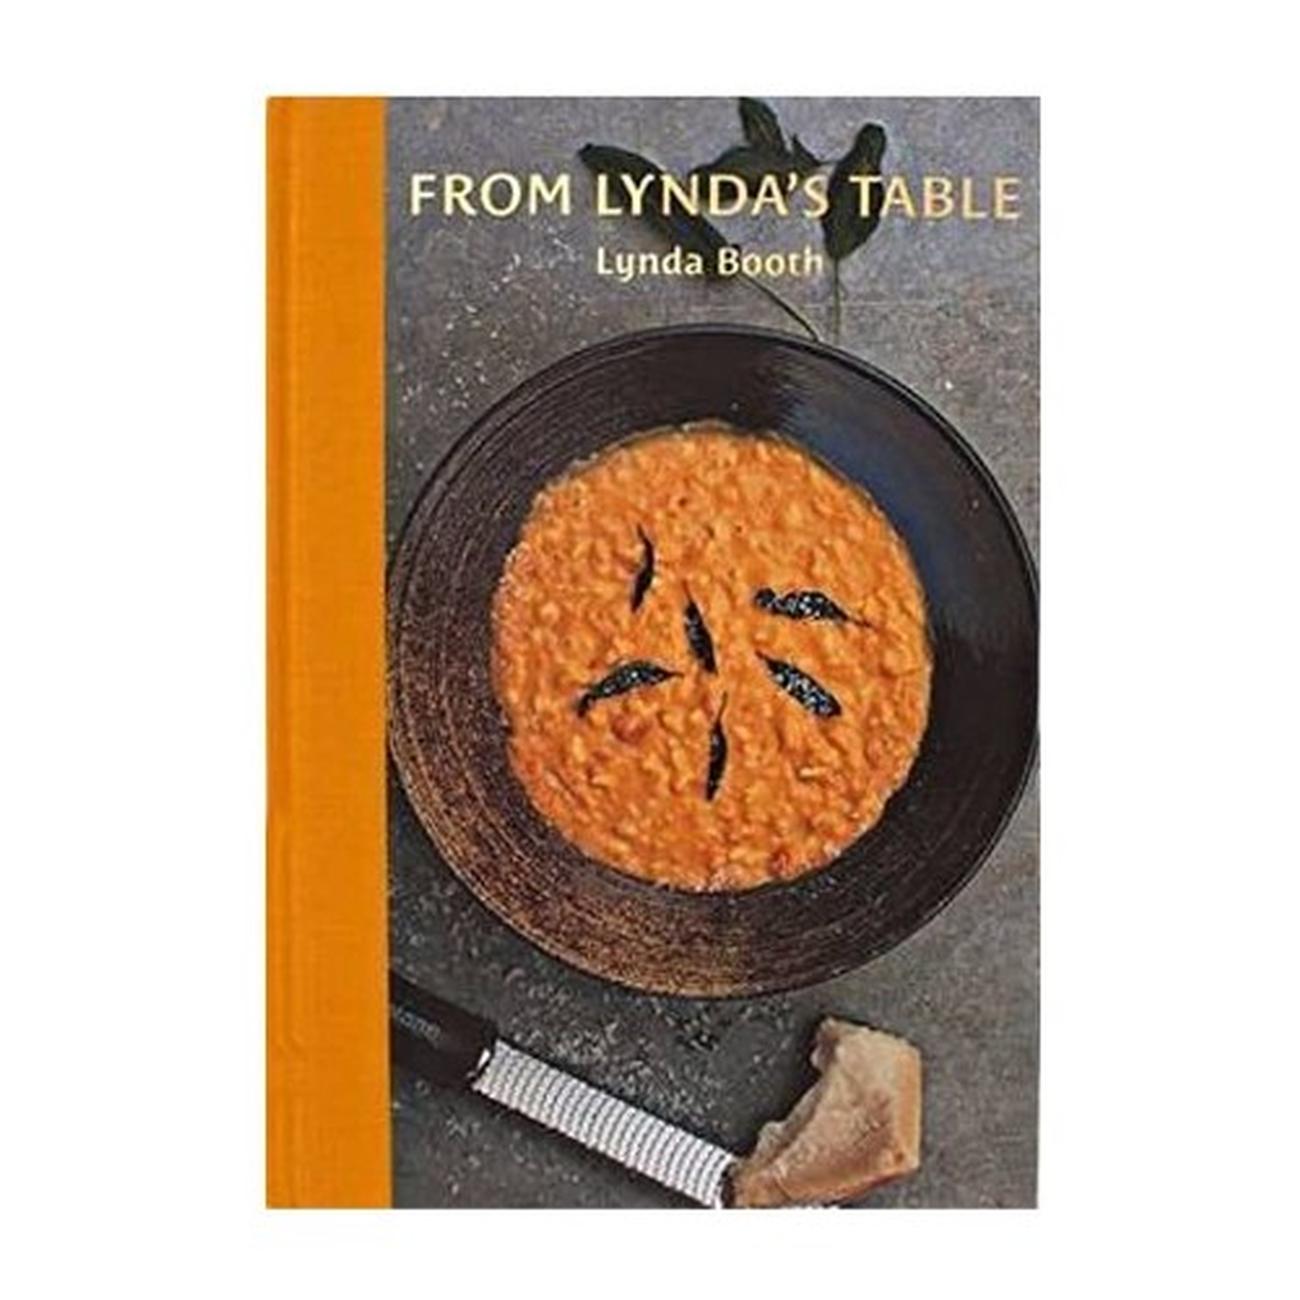 from-lyndas-table-lynda-booth-book - From Lynda's Table by Lynda Booth